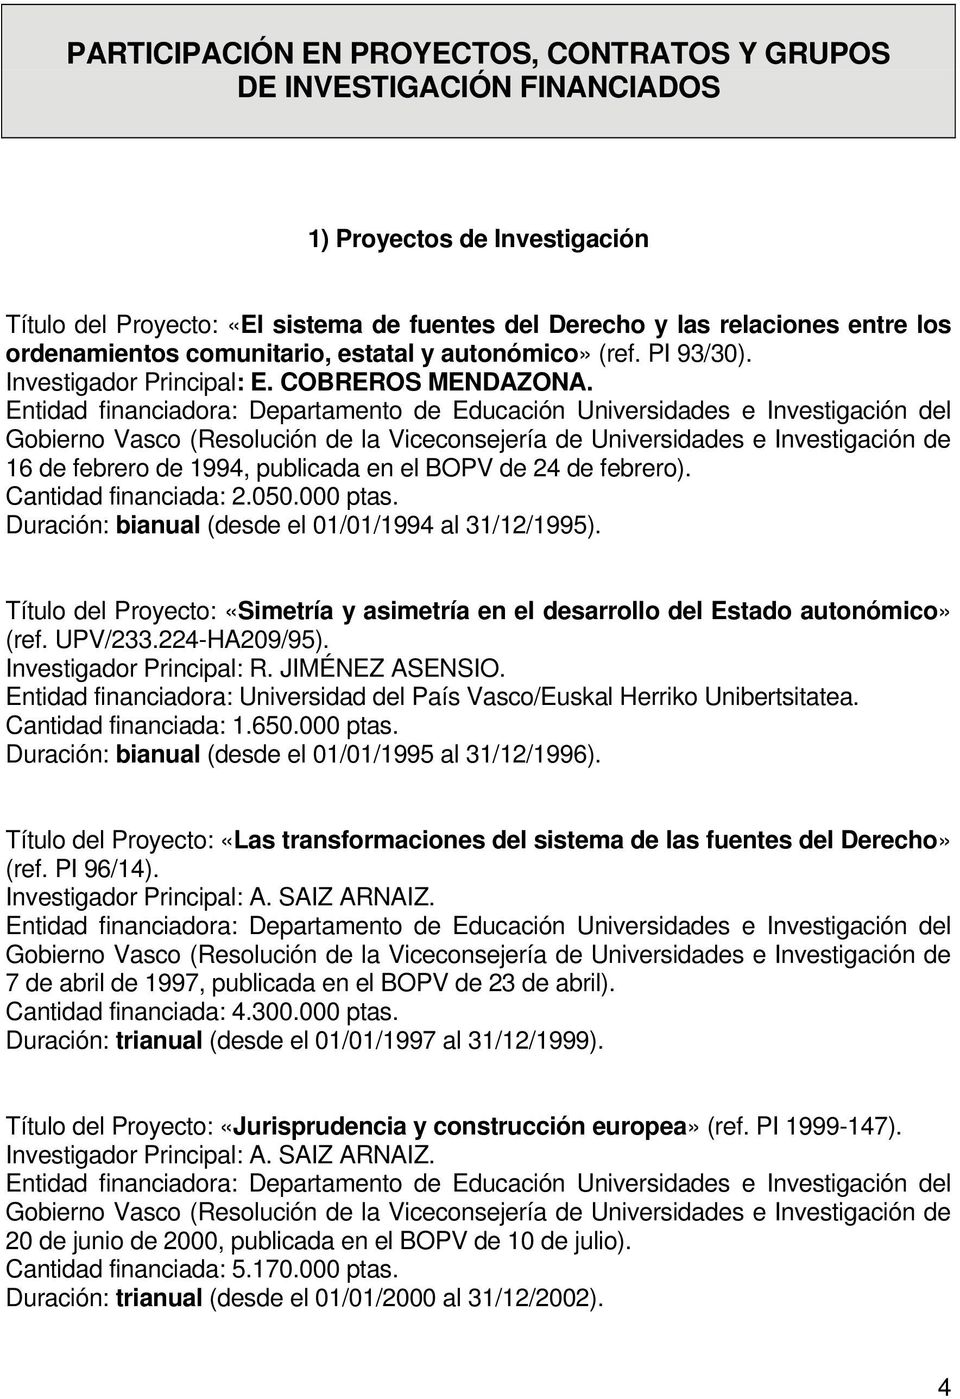 Entidad financiadora: Departamento de Educación Universidades e Investigación del Gobierno Vasco (Resolución de la Viceconsejería de Universidades e Investigación de 16 de febrero de 1994, publicada